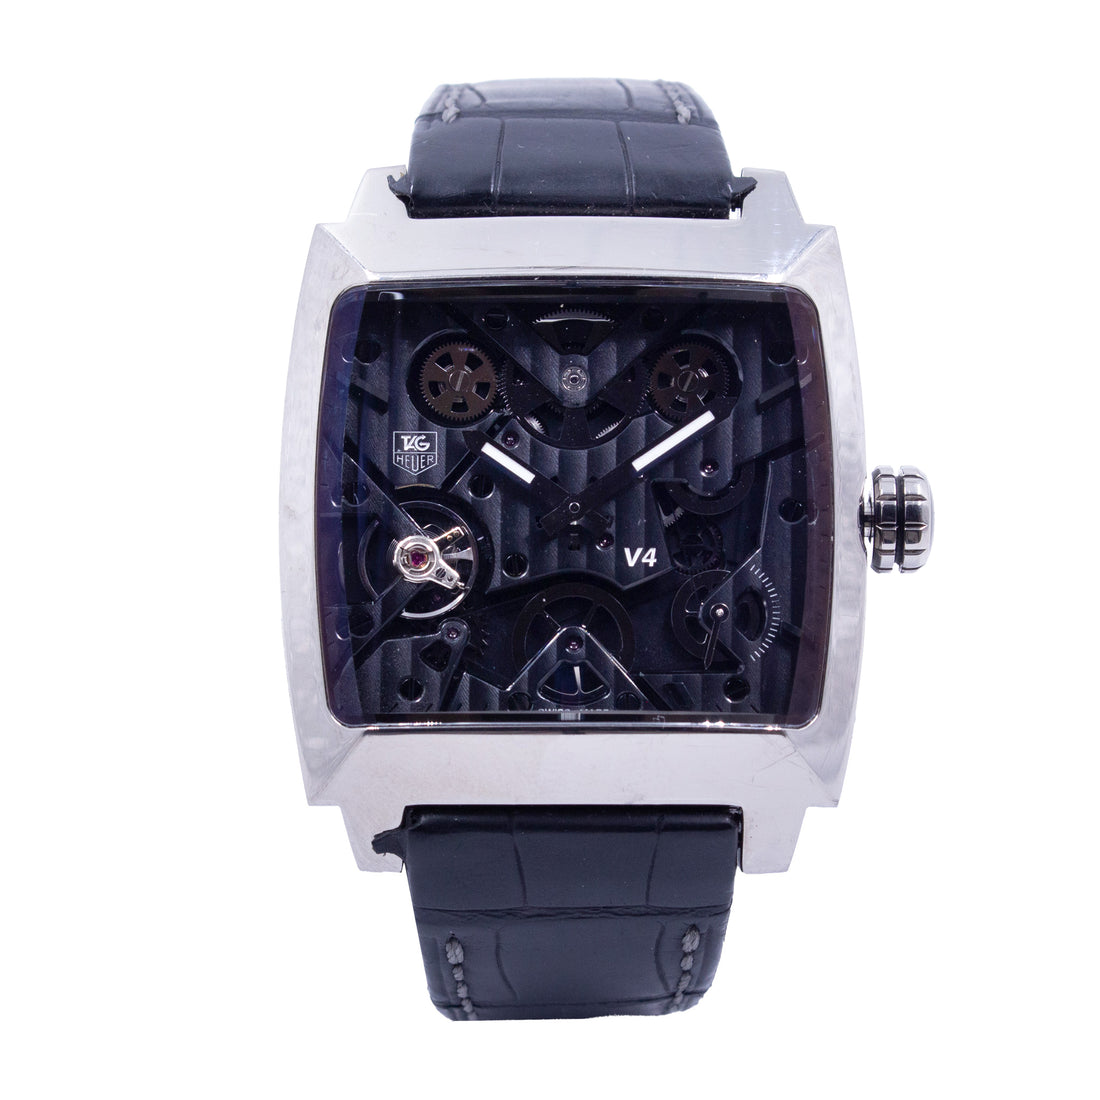 Reloj Tag Heuer Monaco V4 Automatic Limited edition